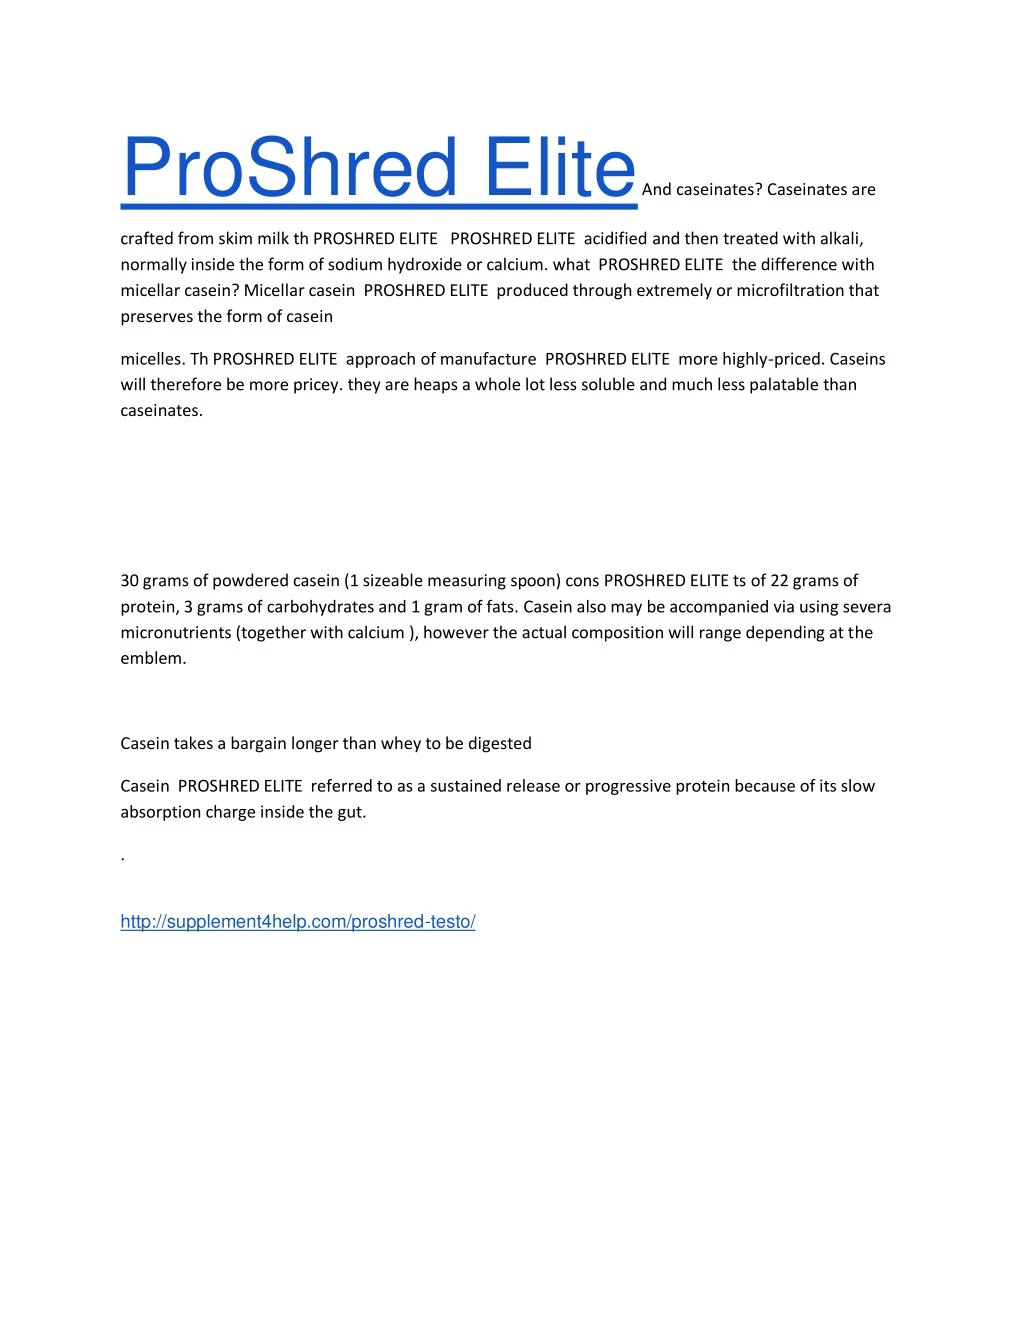 proshred elite and caseinates caseinates are